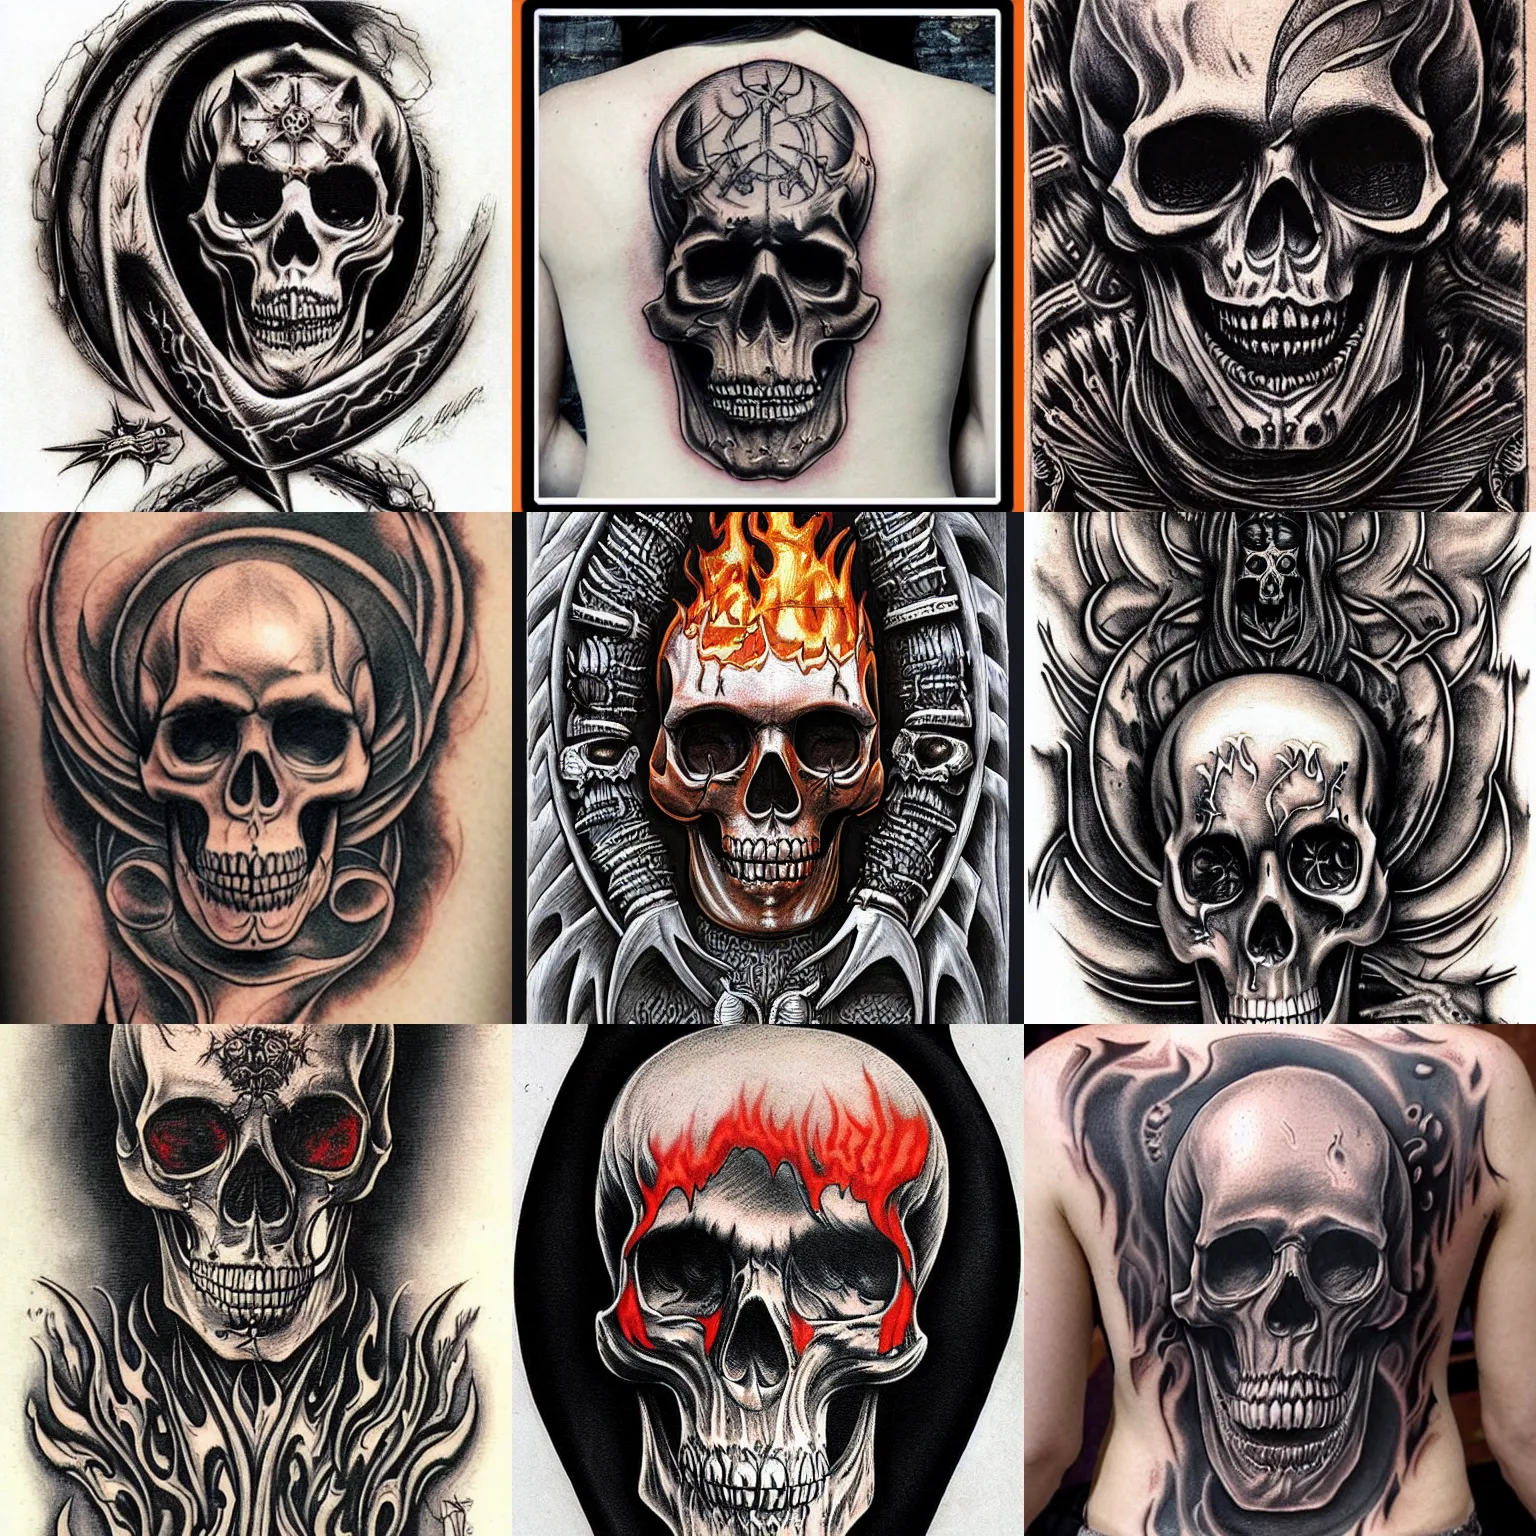 Top 47 Flaming Skull Tattoo Ideas 2021 Inspiration Guide  Skull tattoos  Skull sleeve tattoos Skull tattoo